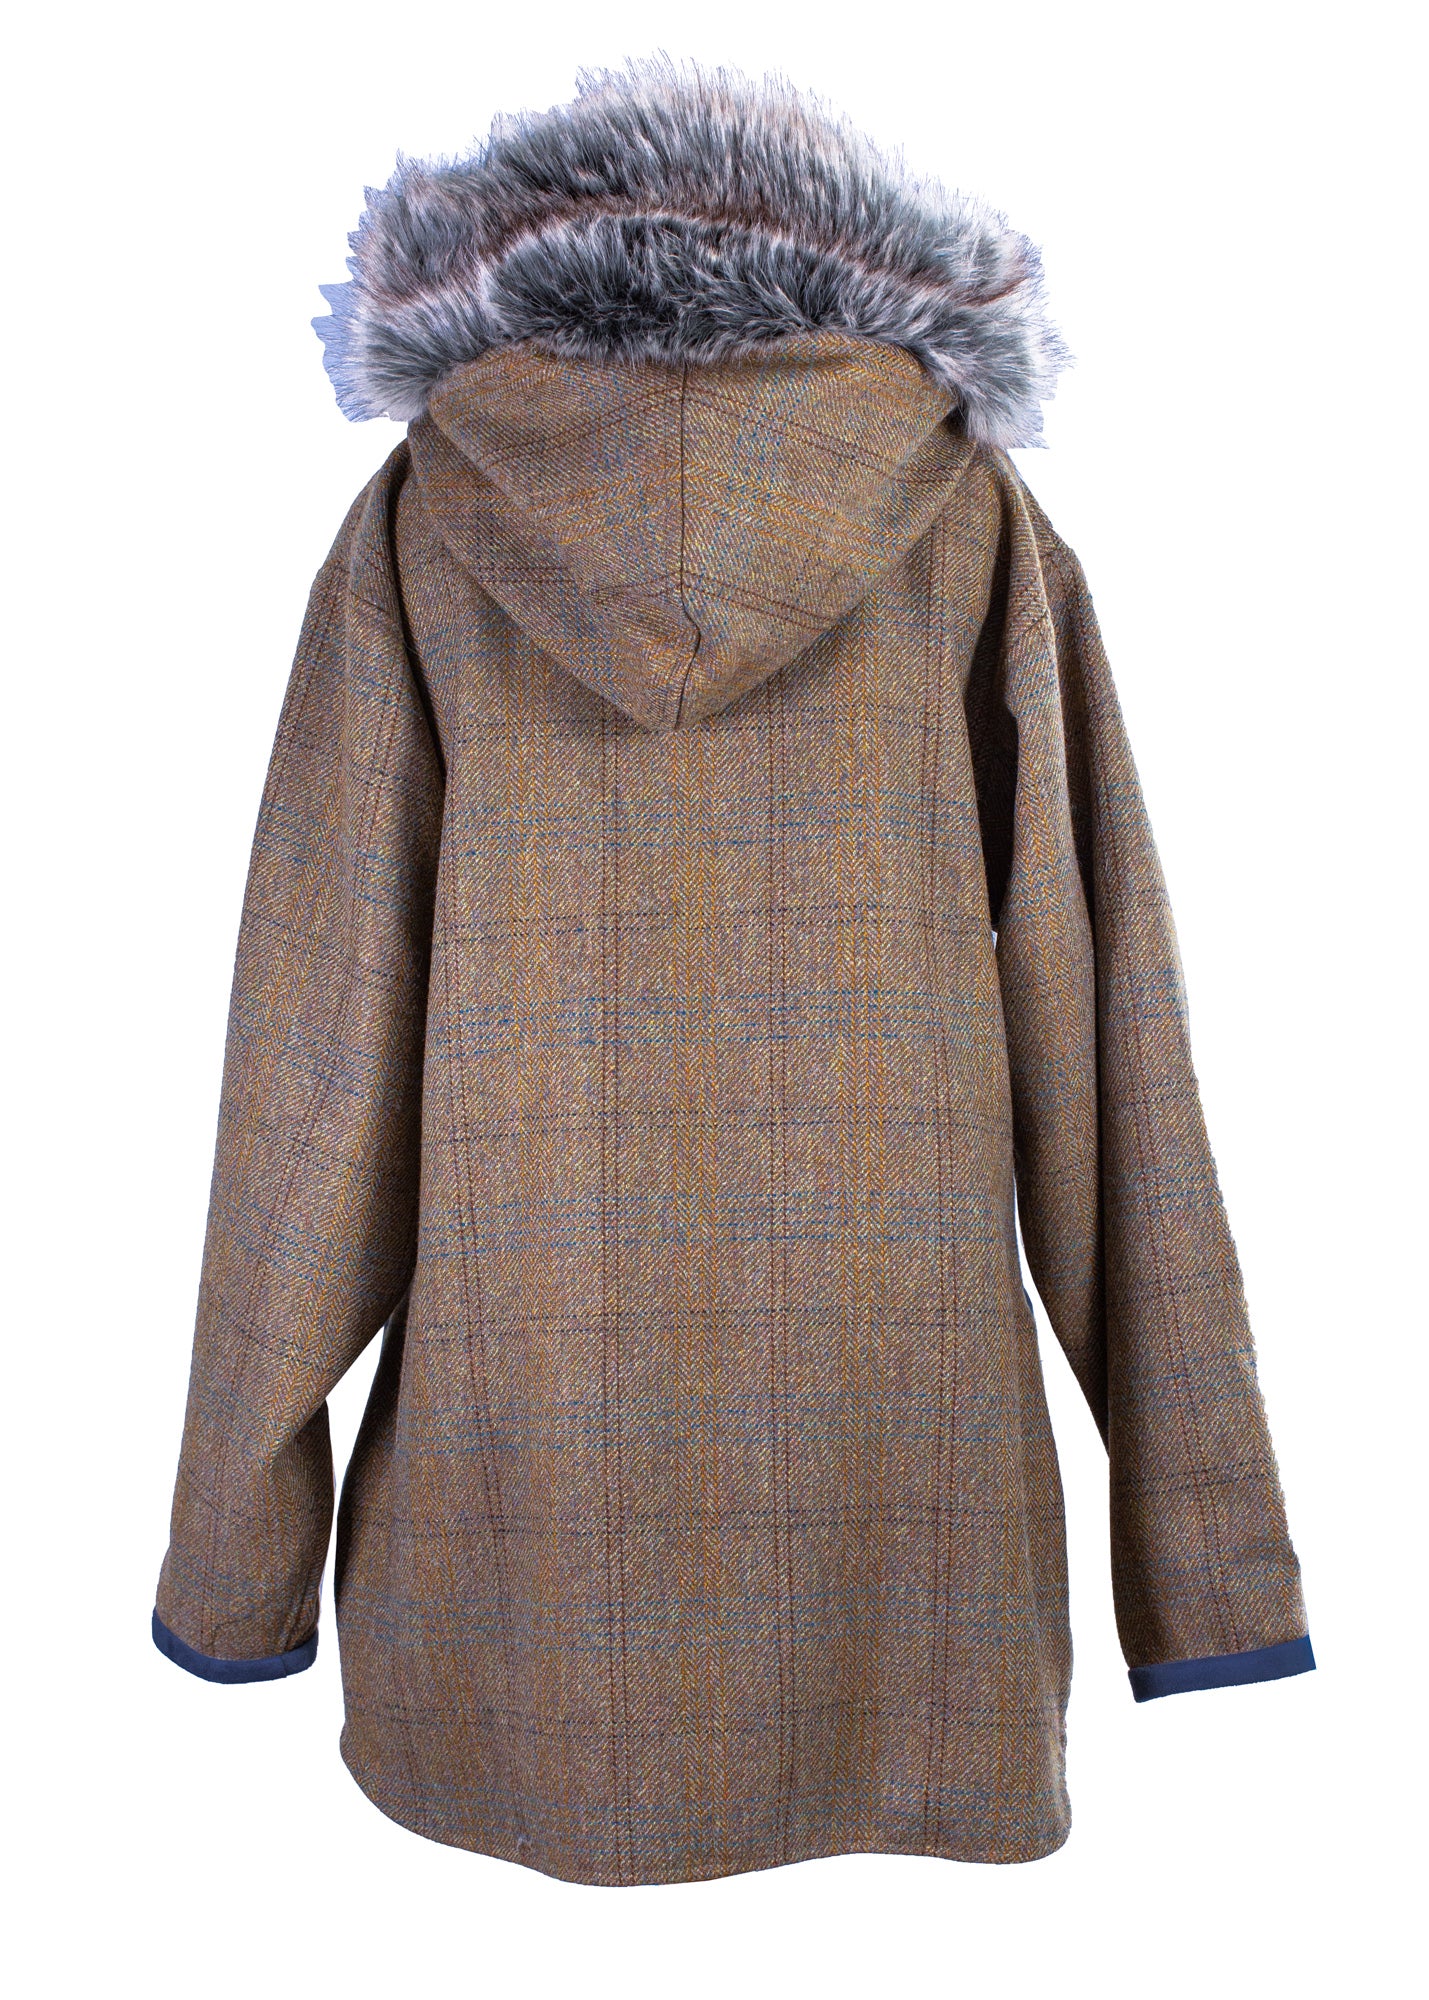 The Maude Tweed Coat